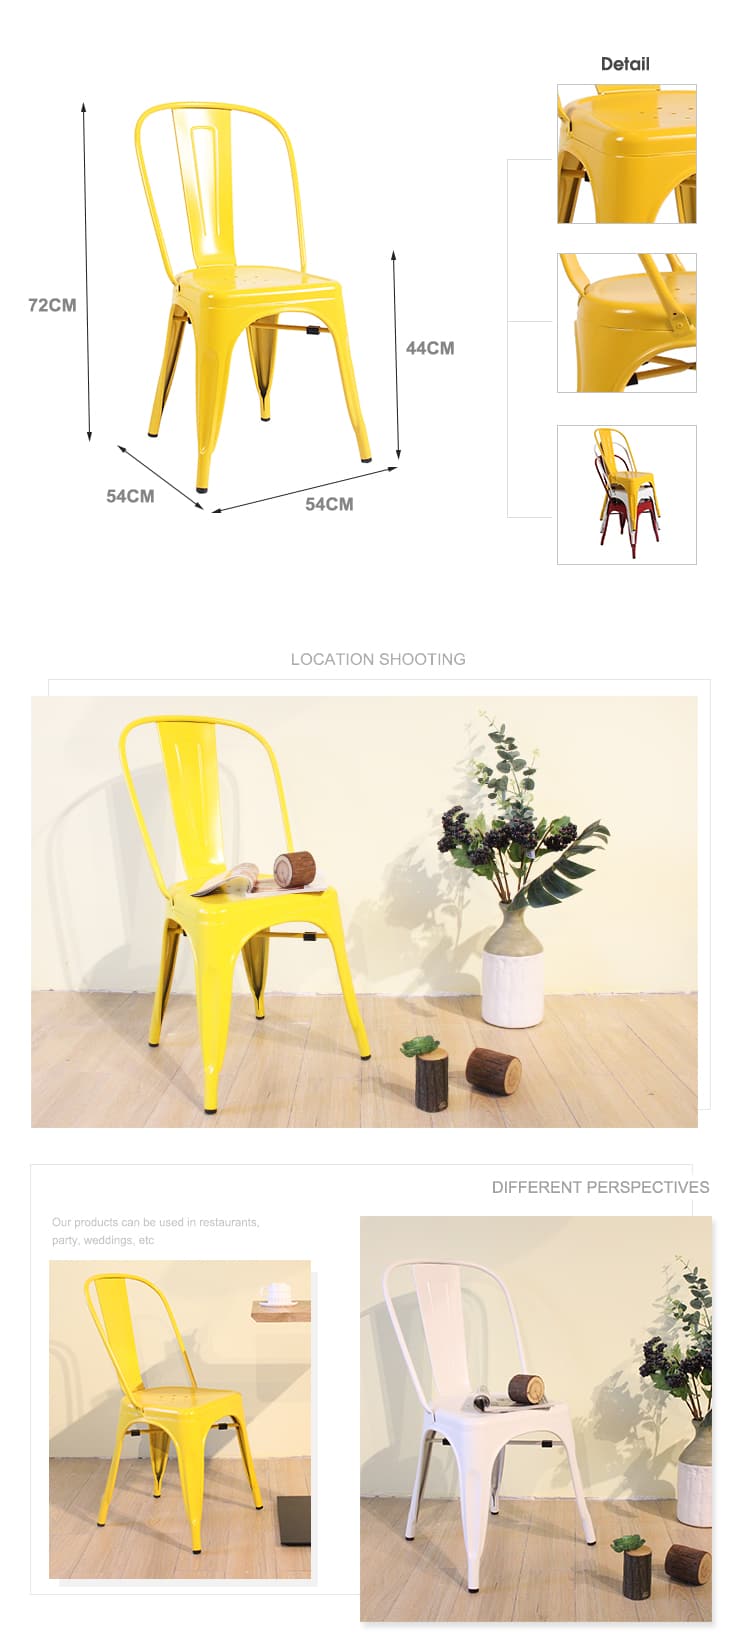 كرسي توليكس هو رمز لتصميم الأثاث مع كرسي طويل أصفر ملفت للنظر